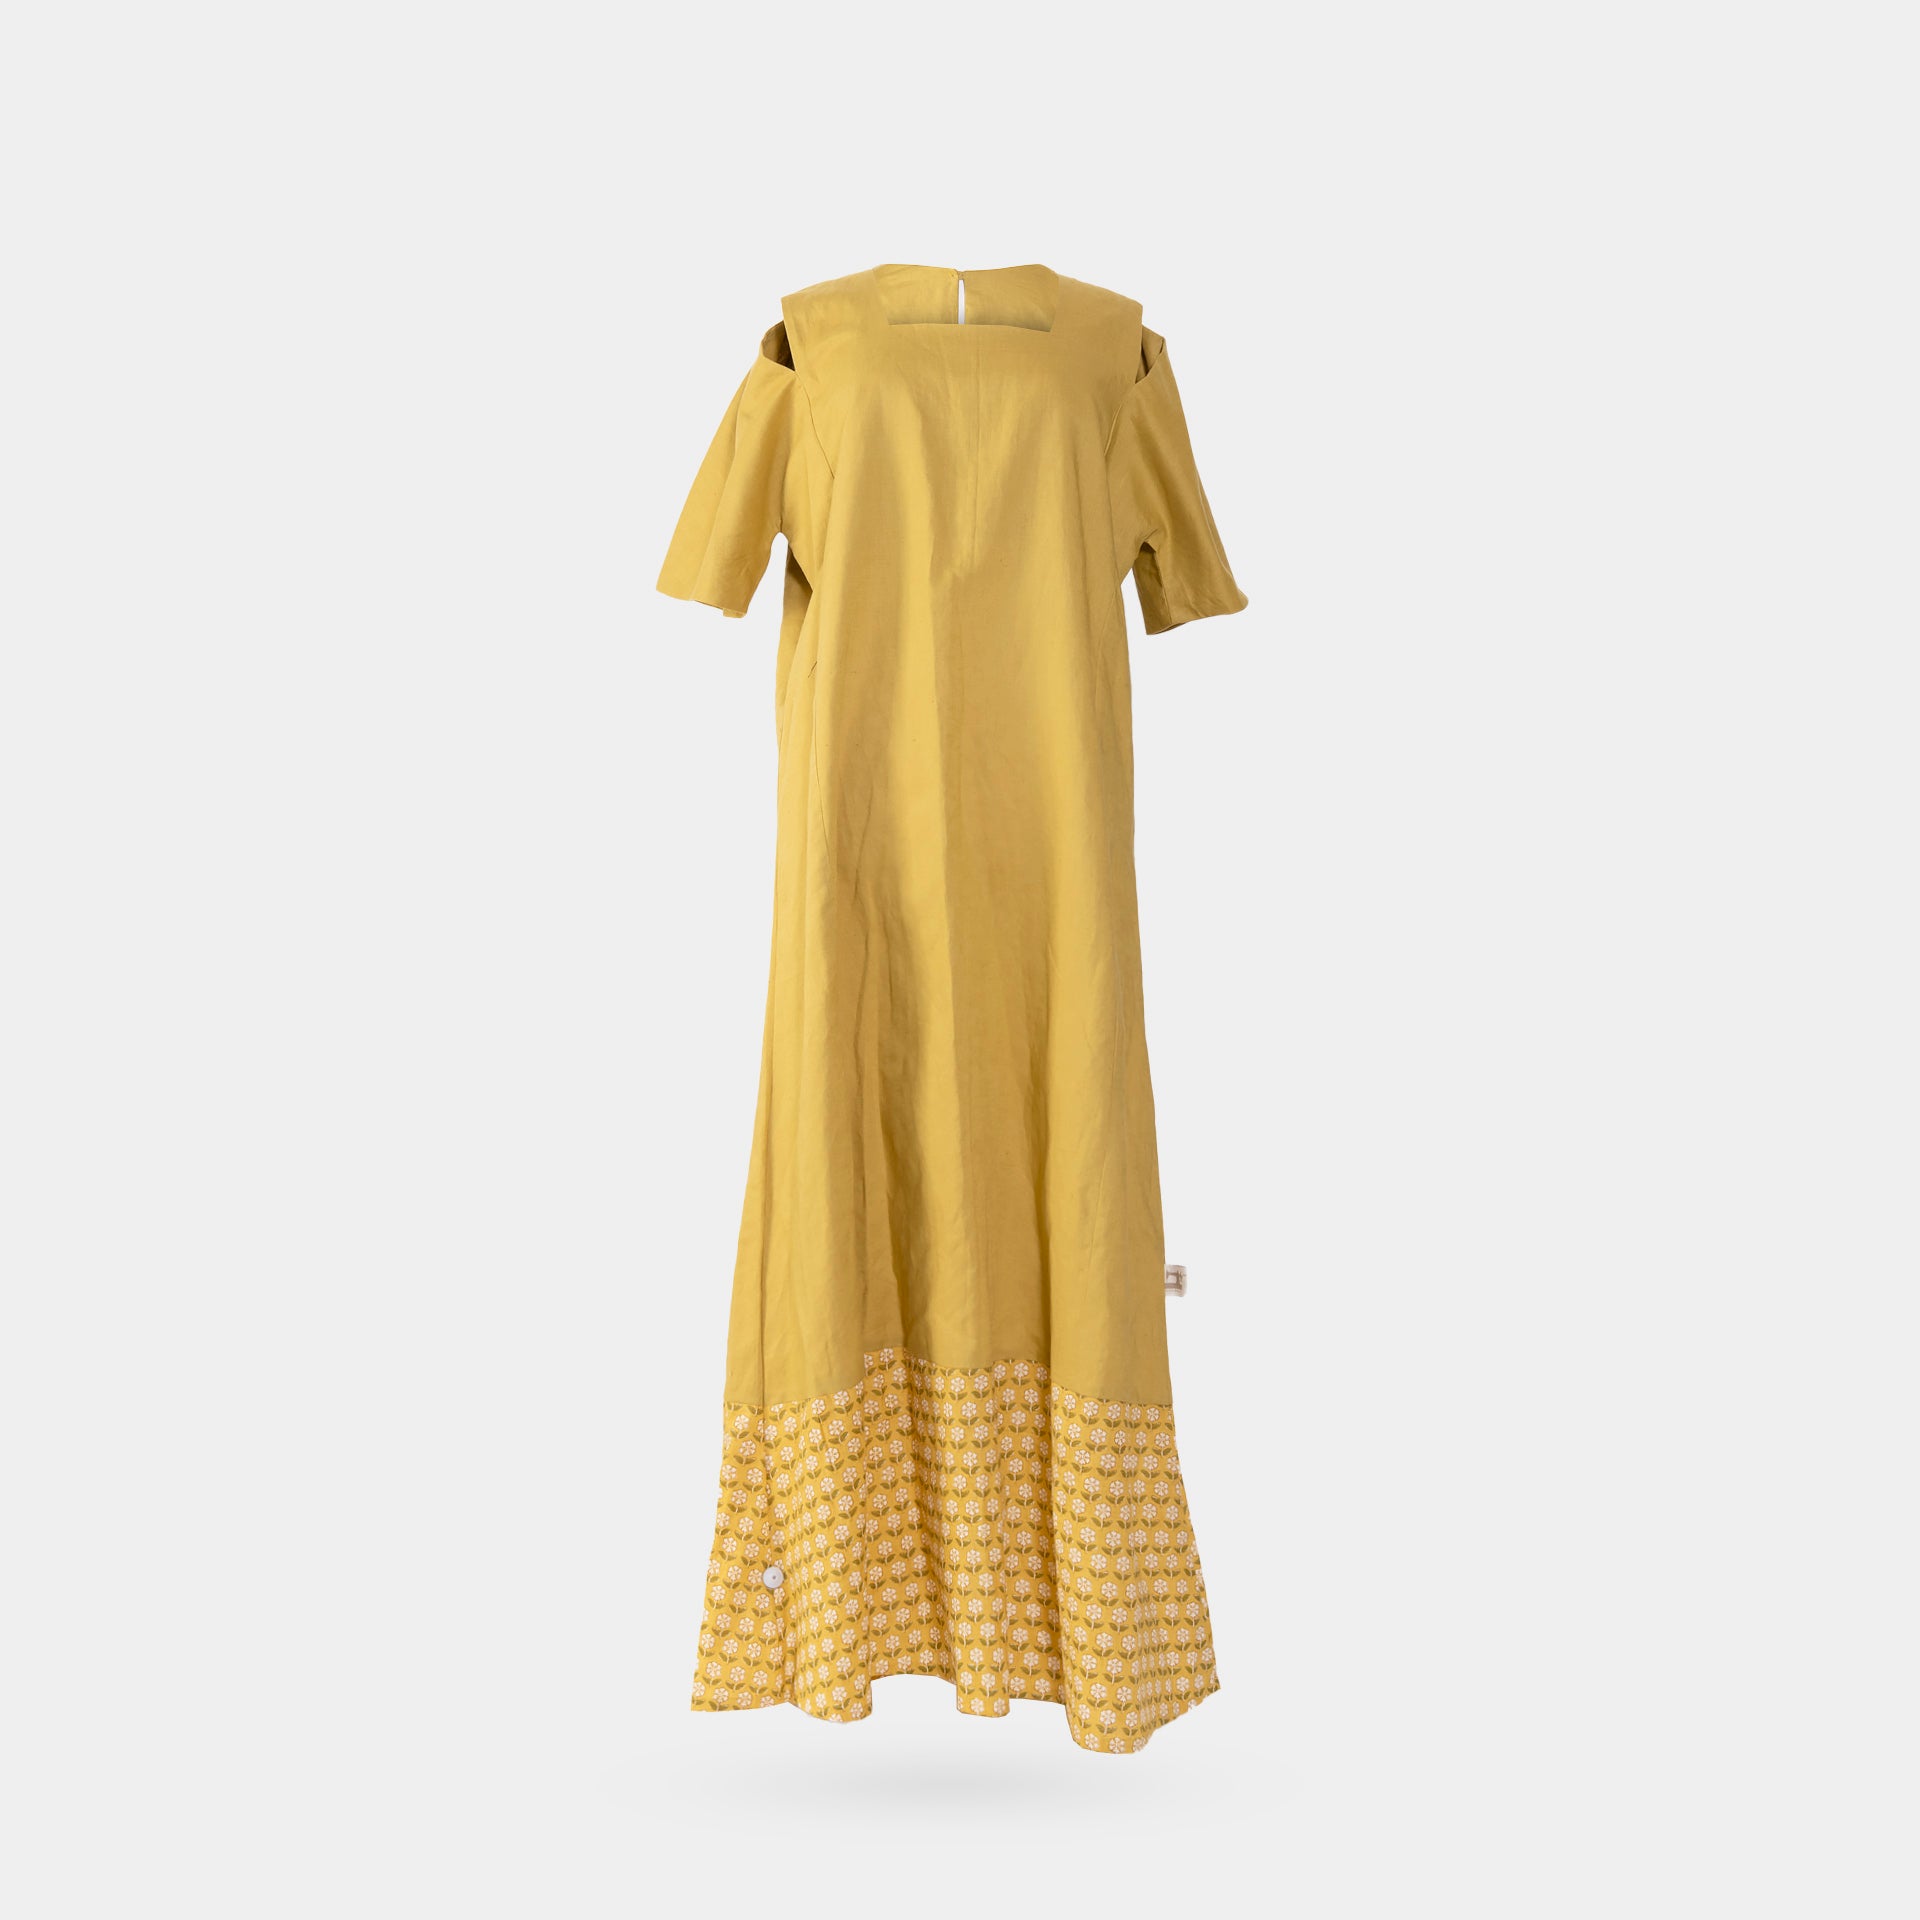 Mustard Linen Short Sleeve Dress From Darzah